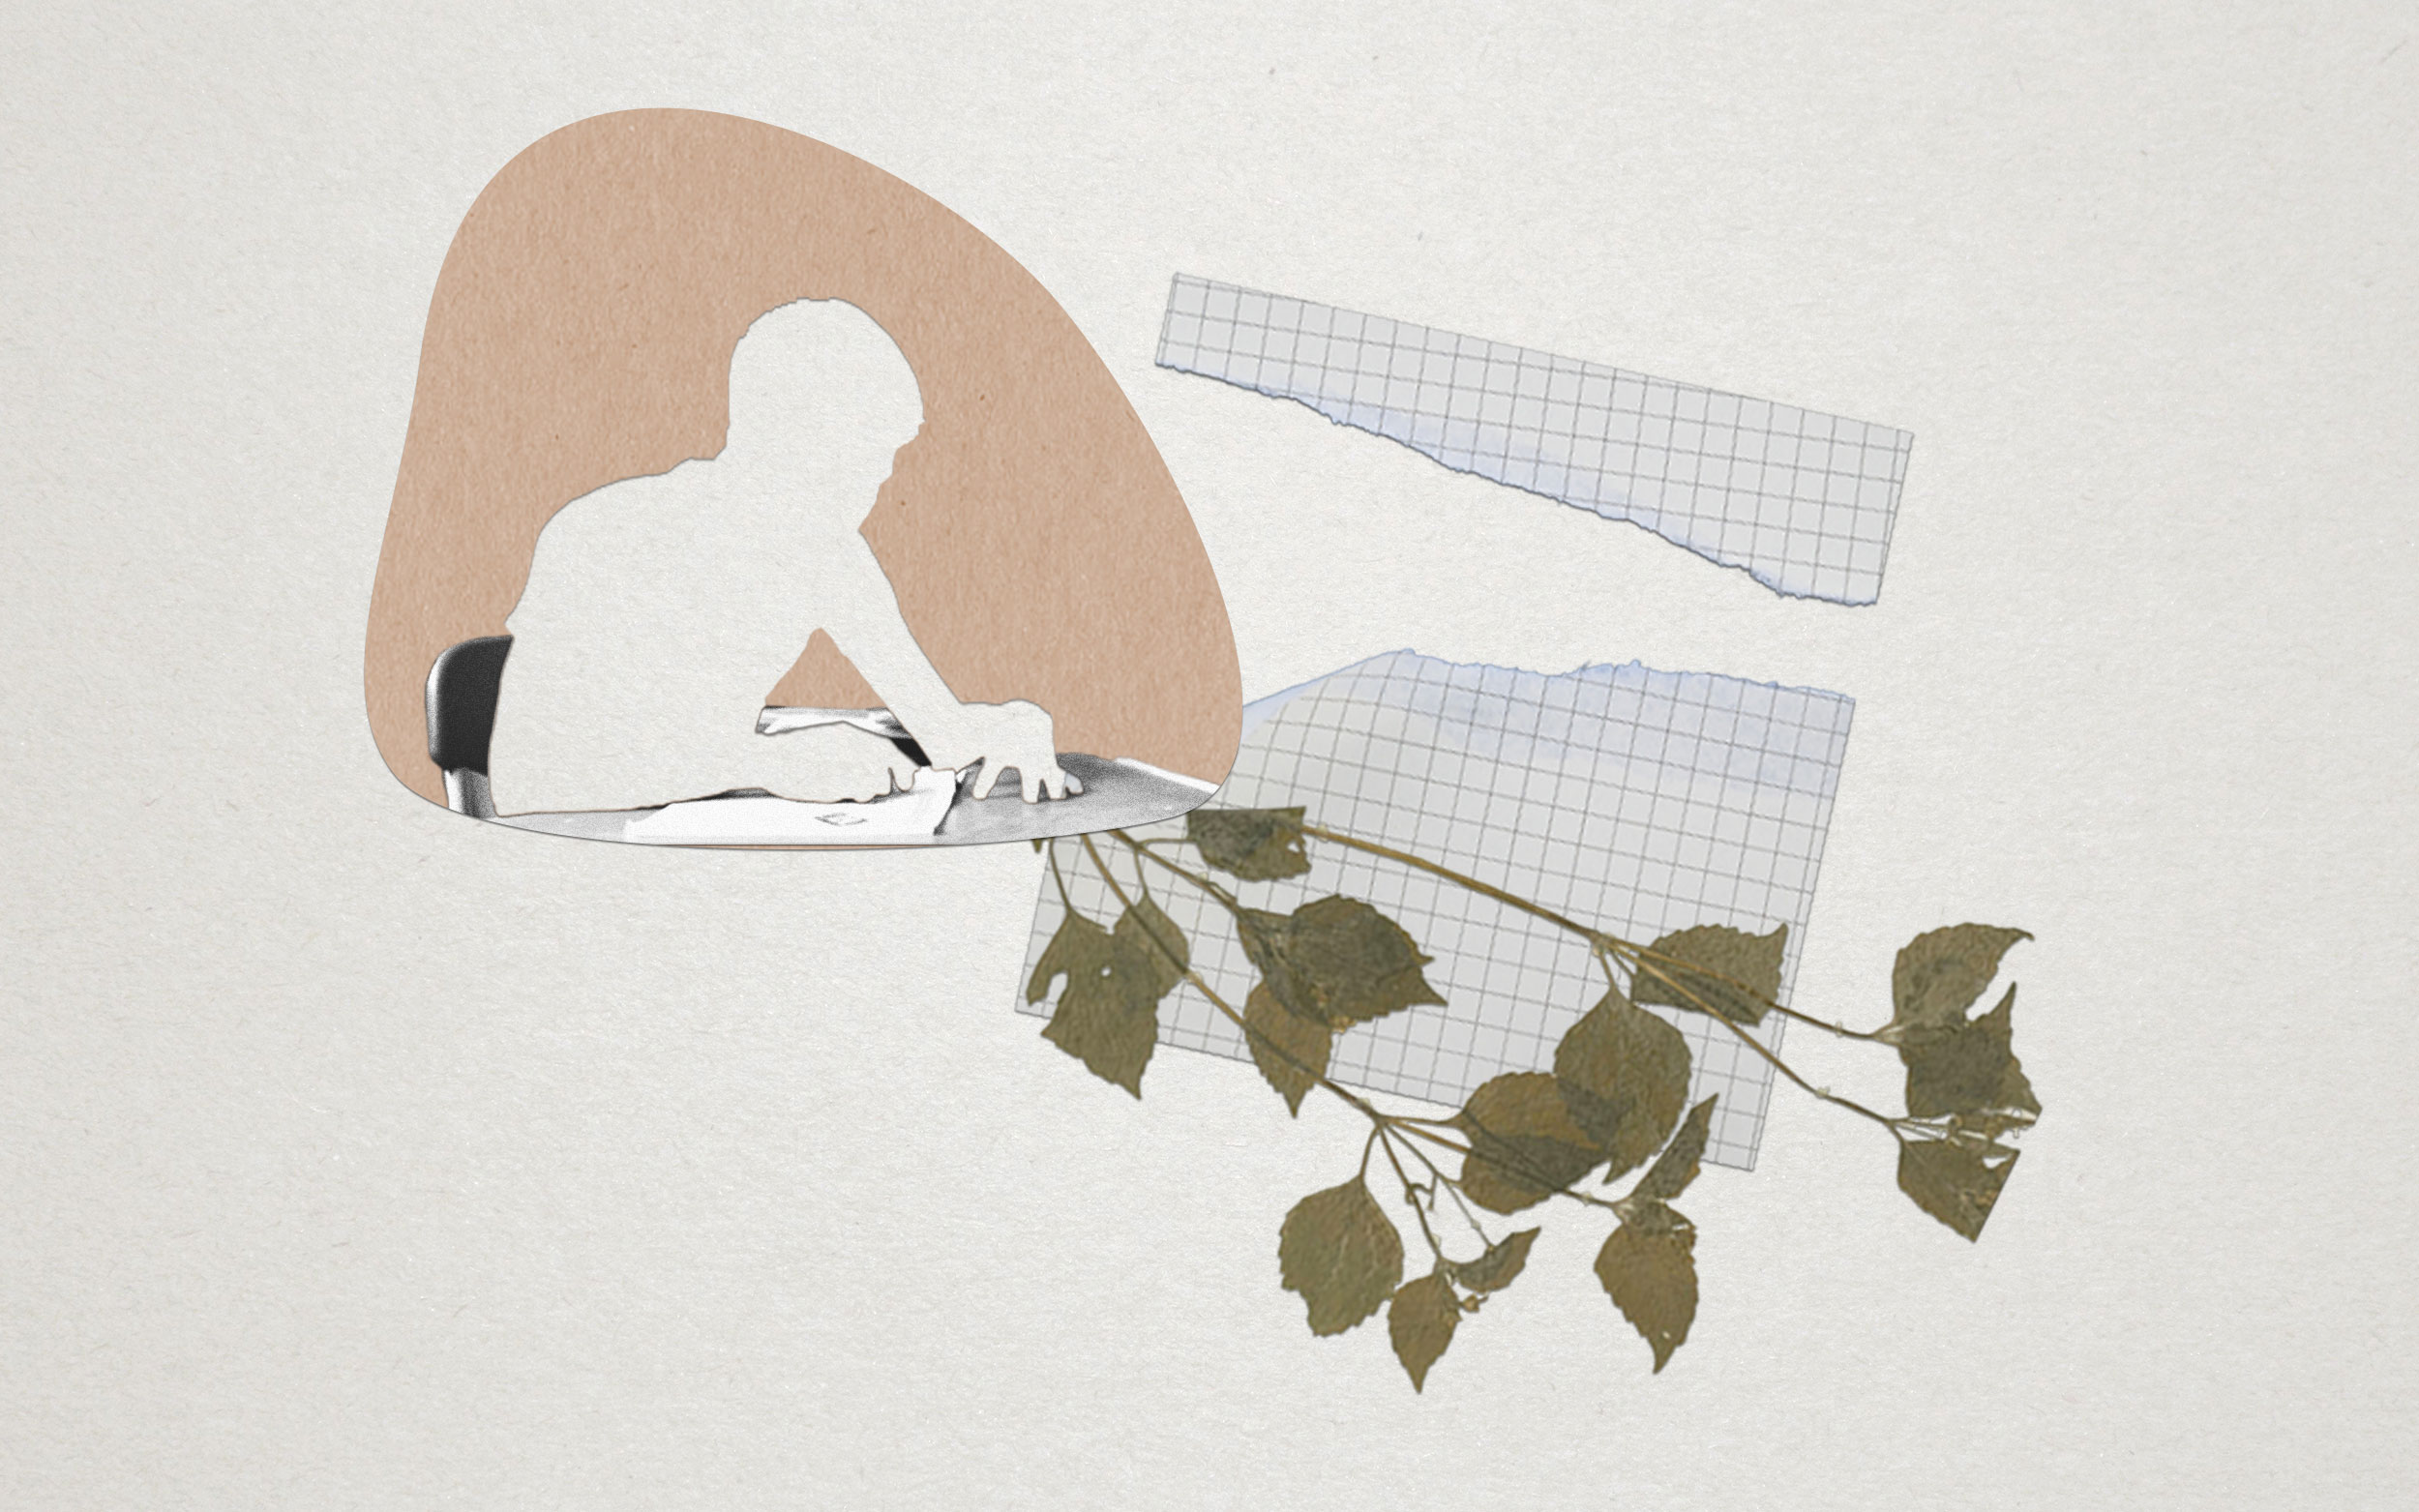 En recortes de papel, silueta de un joven sentado en un escritorio, hoja cuadriculada rasgada en dos y hojas secas 